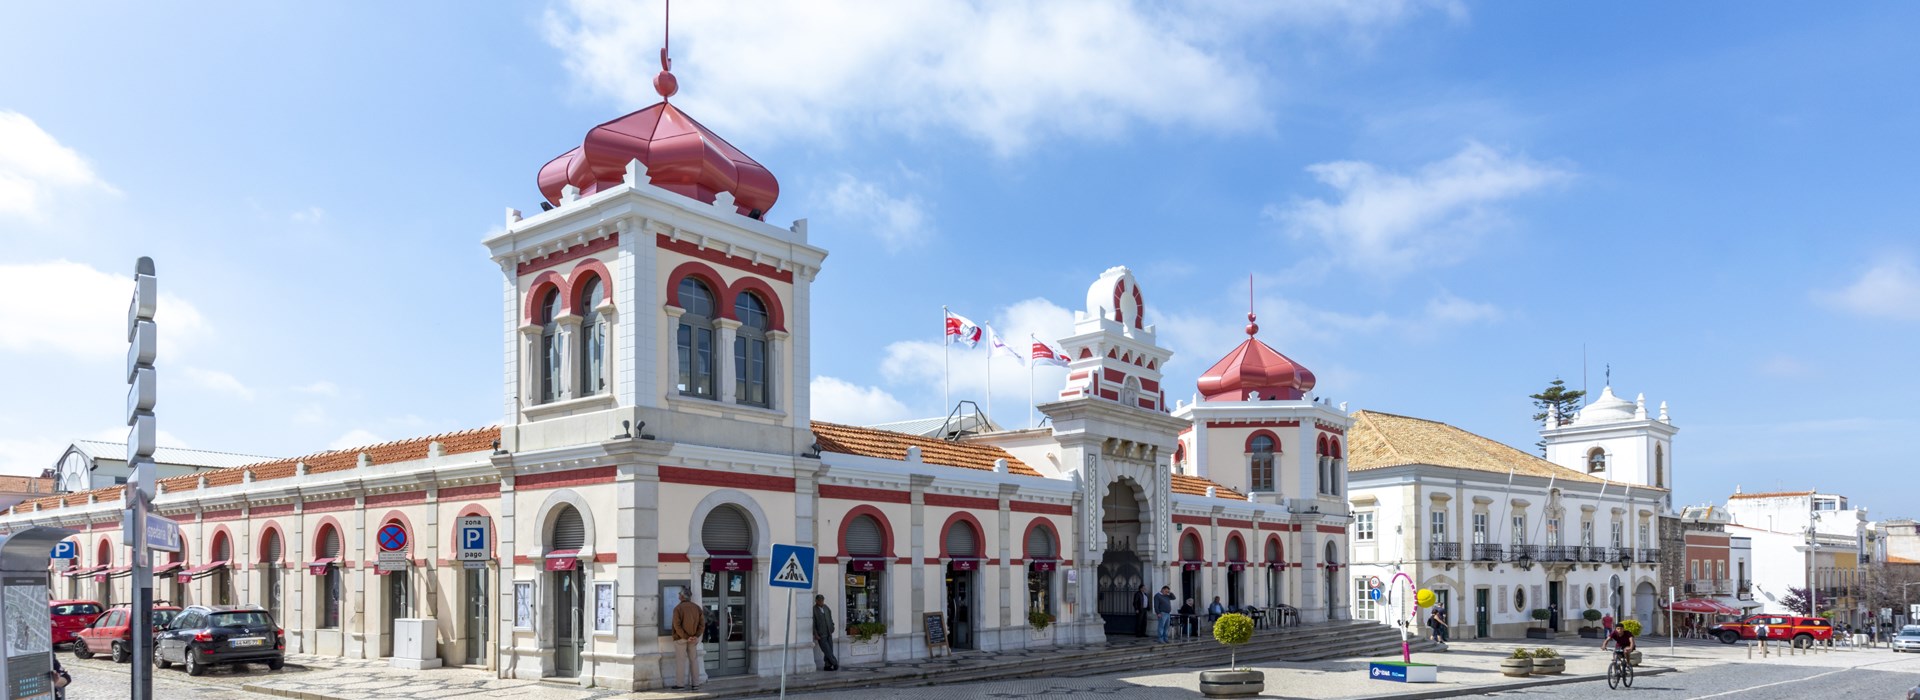 Visiter Le marché de Loulé - Portugal